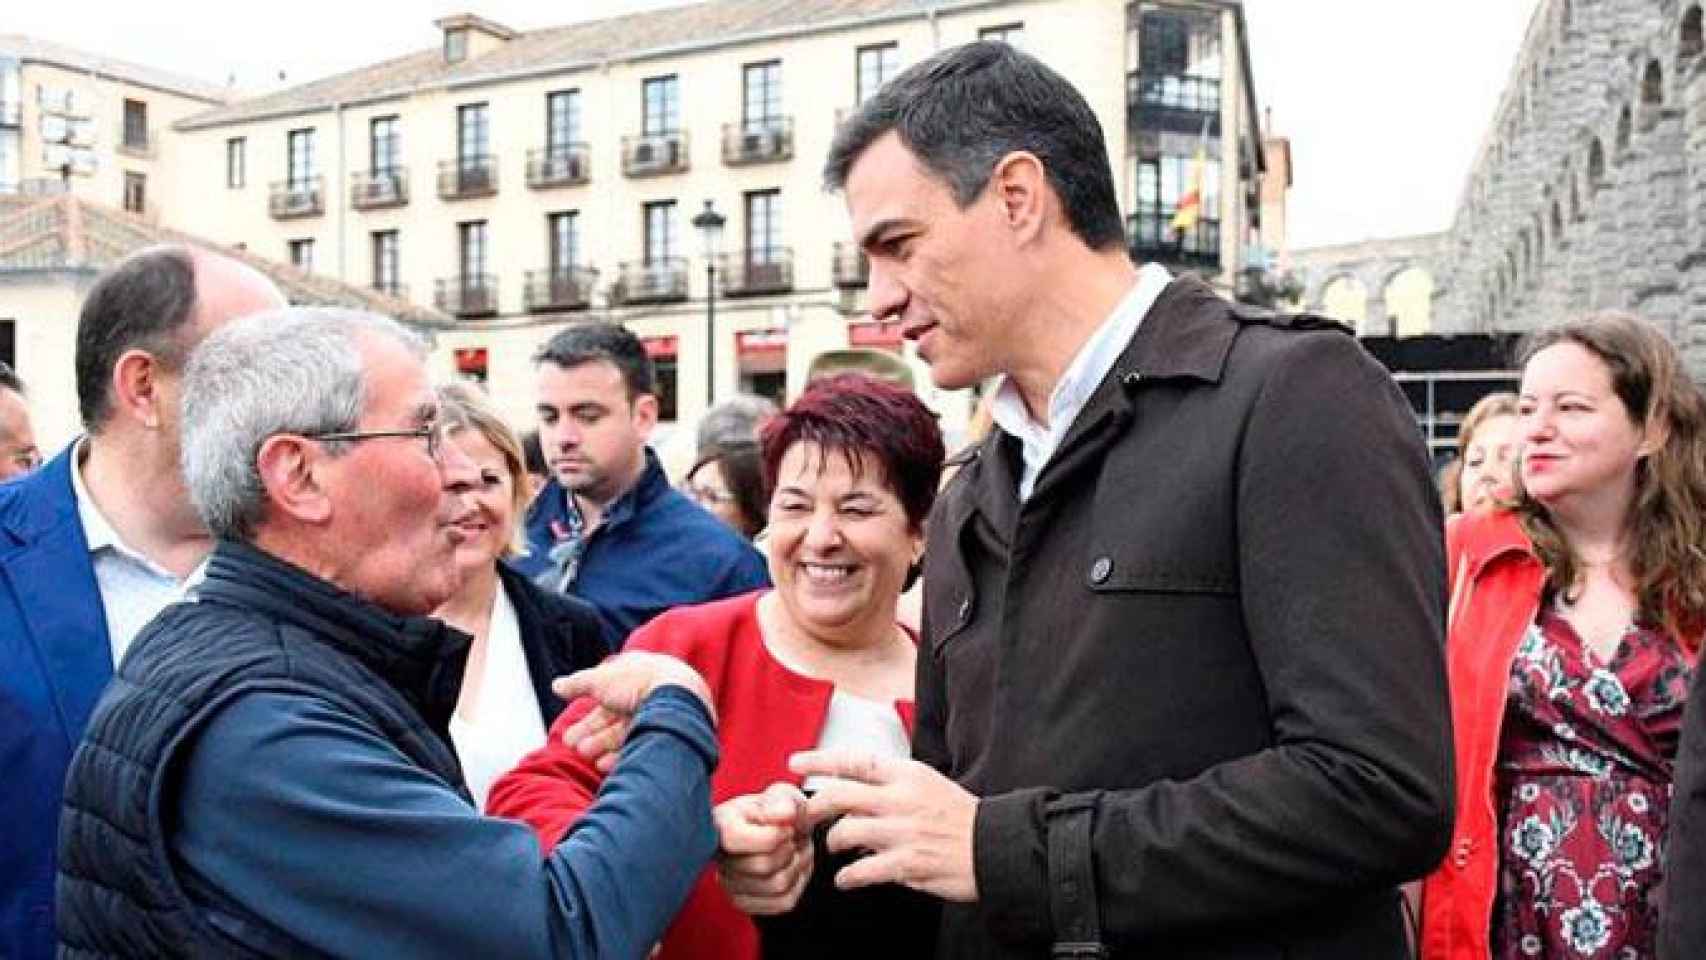 El líder del PSOE, Pedro Sánchez, ha pedido desde Segovia que el próximo presidente de la Generalitat gobierne para todos / EFE